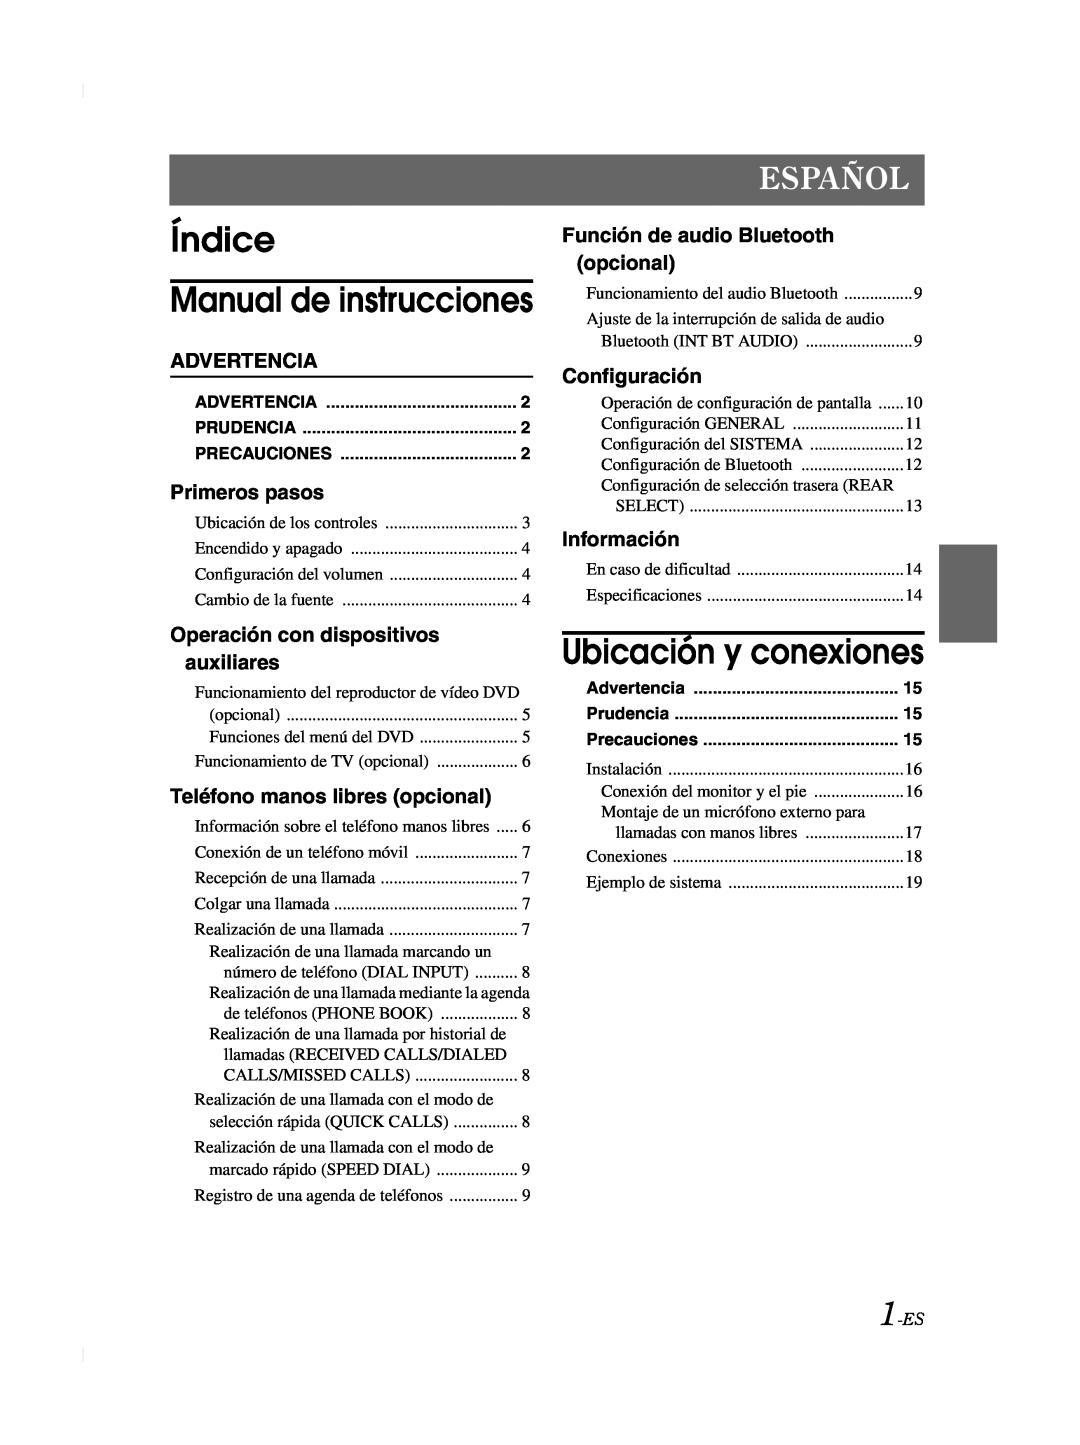 Alpine TME-M740BT Índice Manual de instrucciones, Ubicación y conexiones, Español, Advertencia, Primeros pasos, opcional 